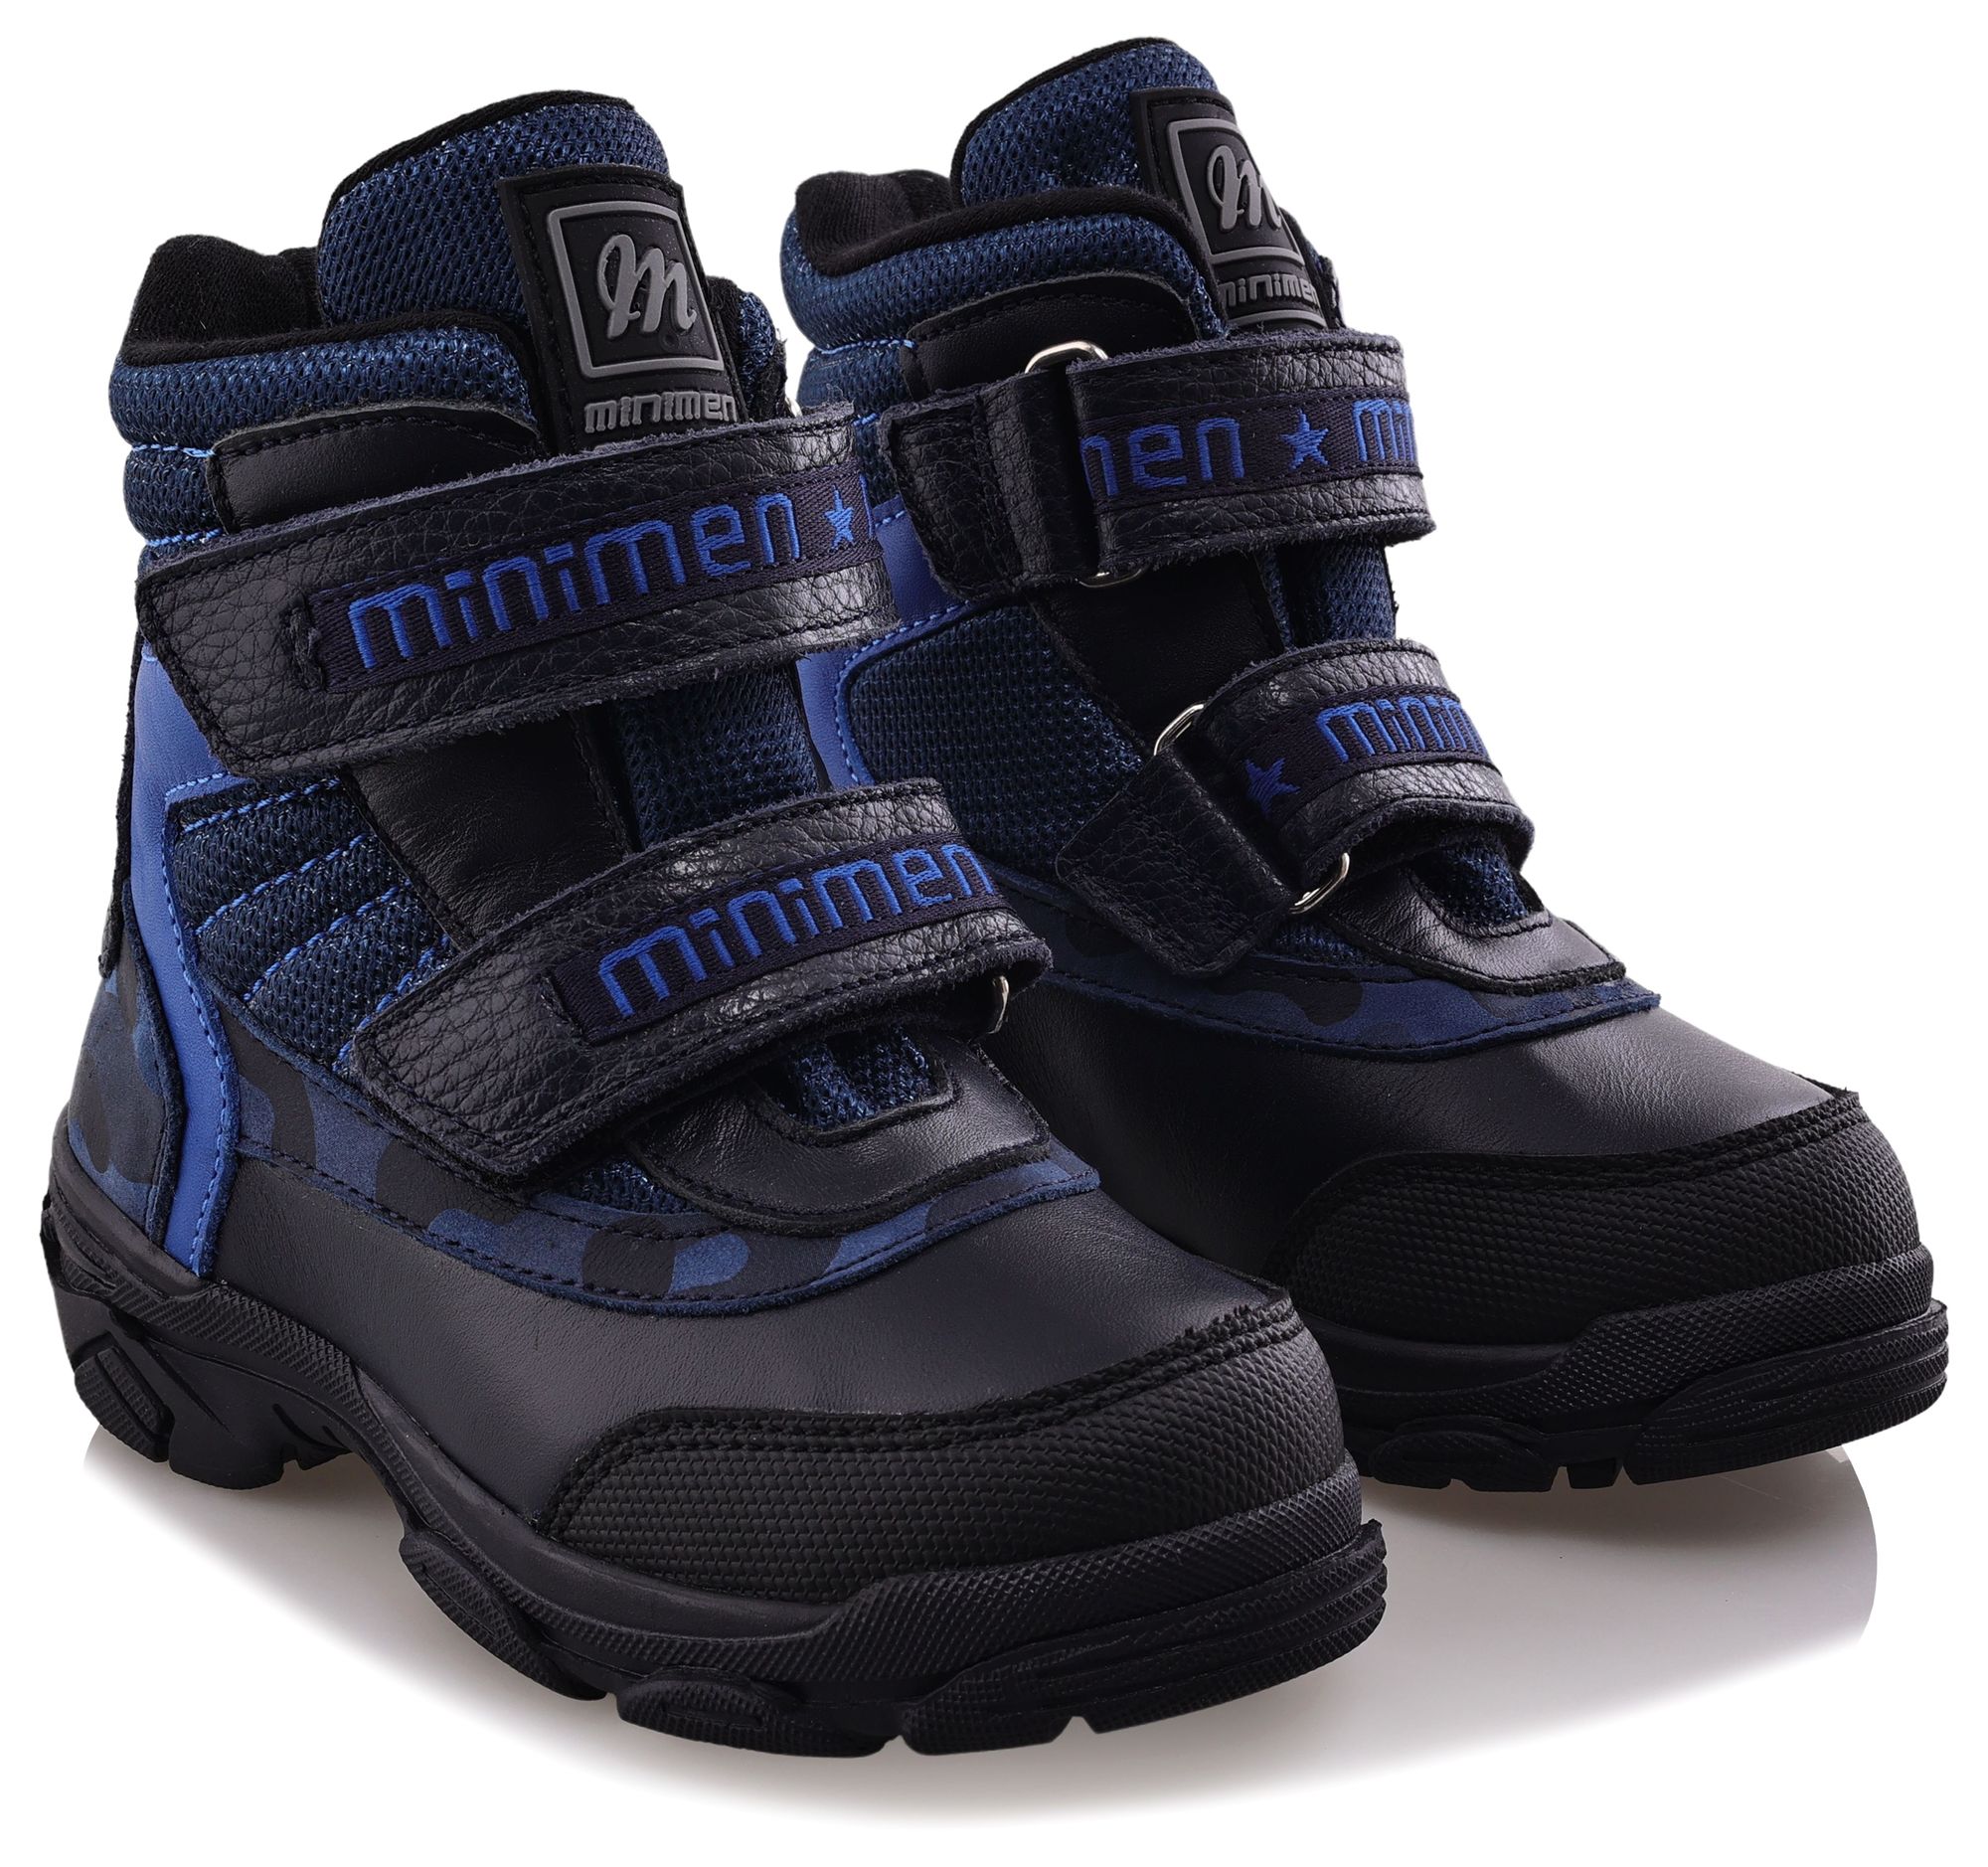 Ботинки Minimen для мальчиков, тёмно-синие, размер 21, 2655-52-23B-02